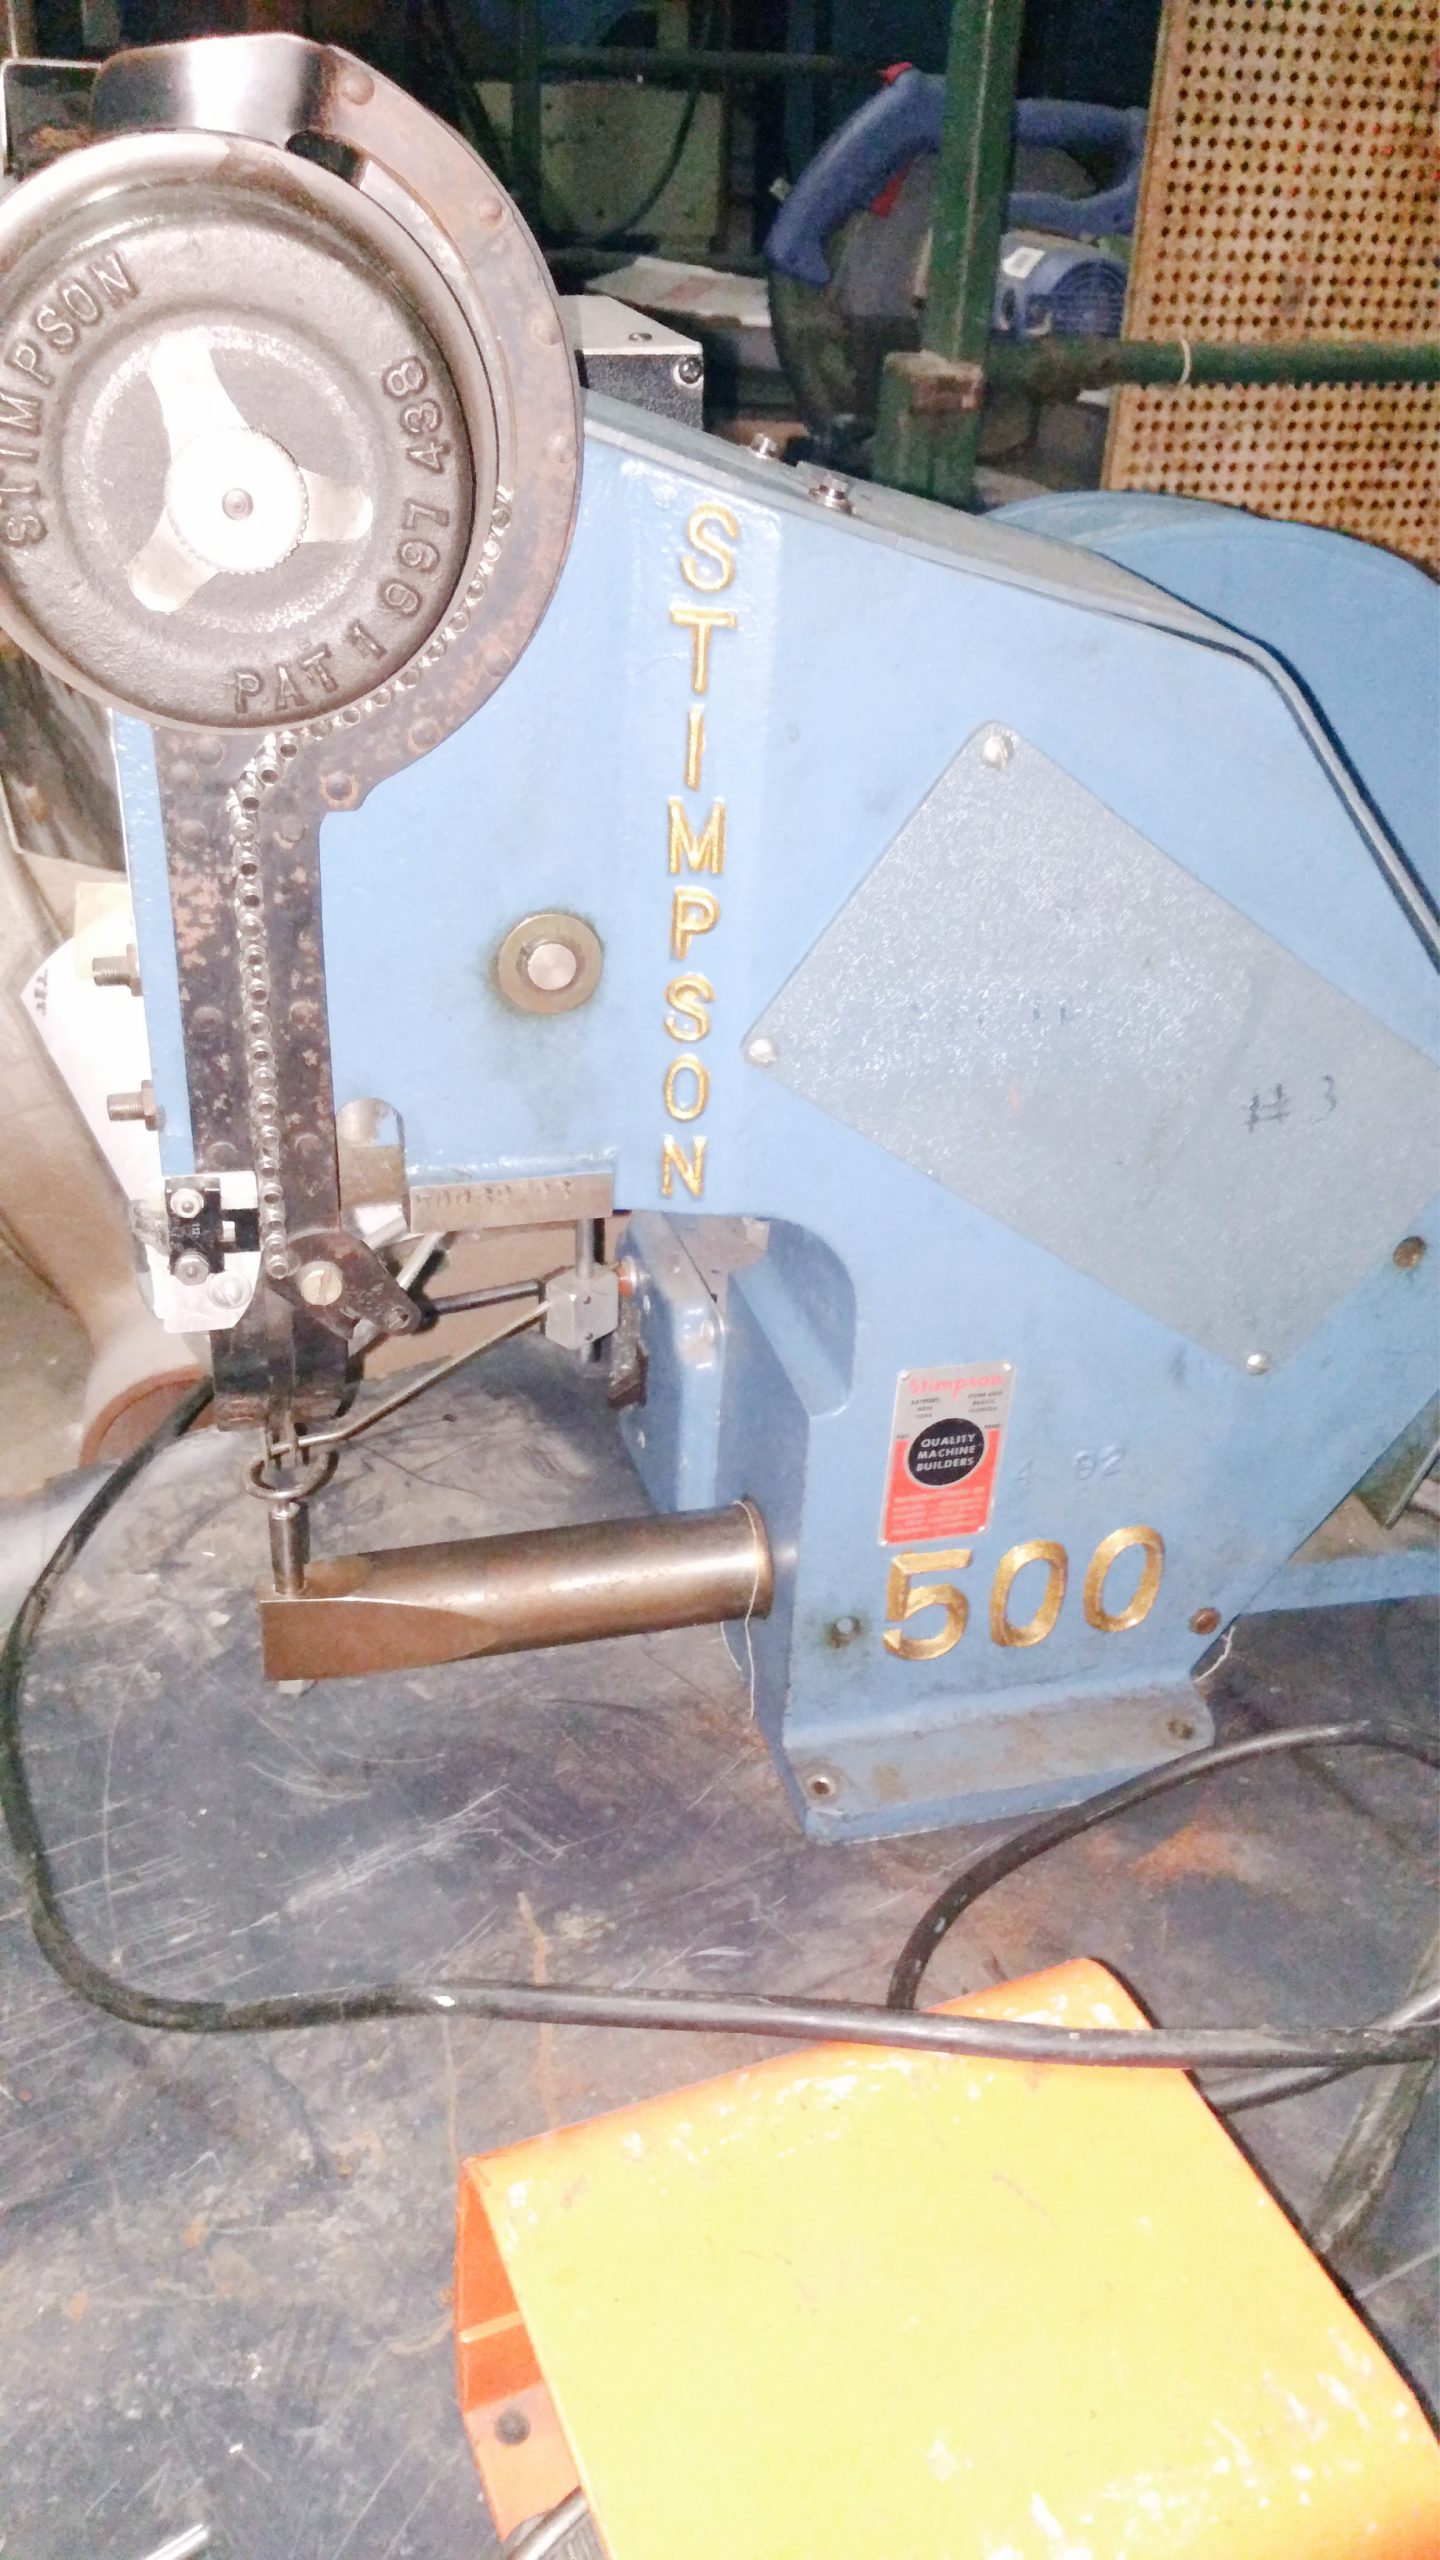 Equipment Lot: Stimpson Model 500 Automatic Eyeletter & Bestpak Carton Sealer (used) Item # UE-072221C (Indiana)